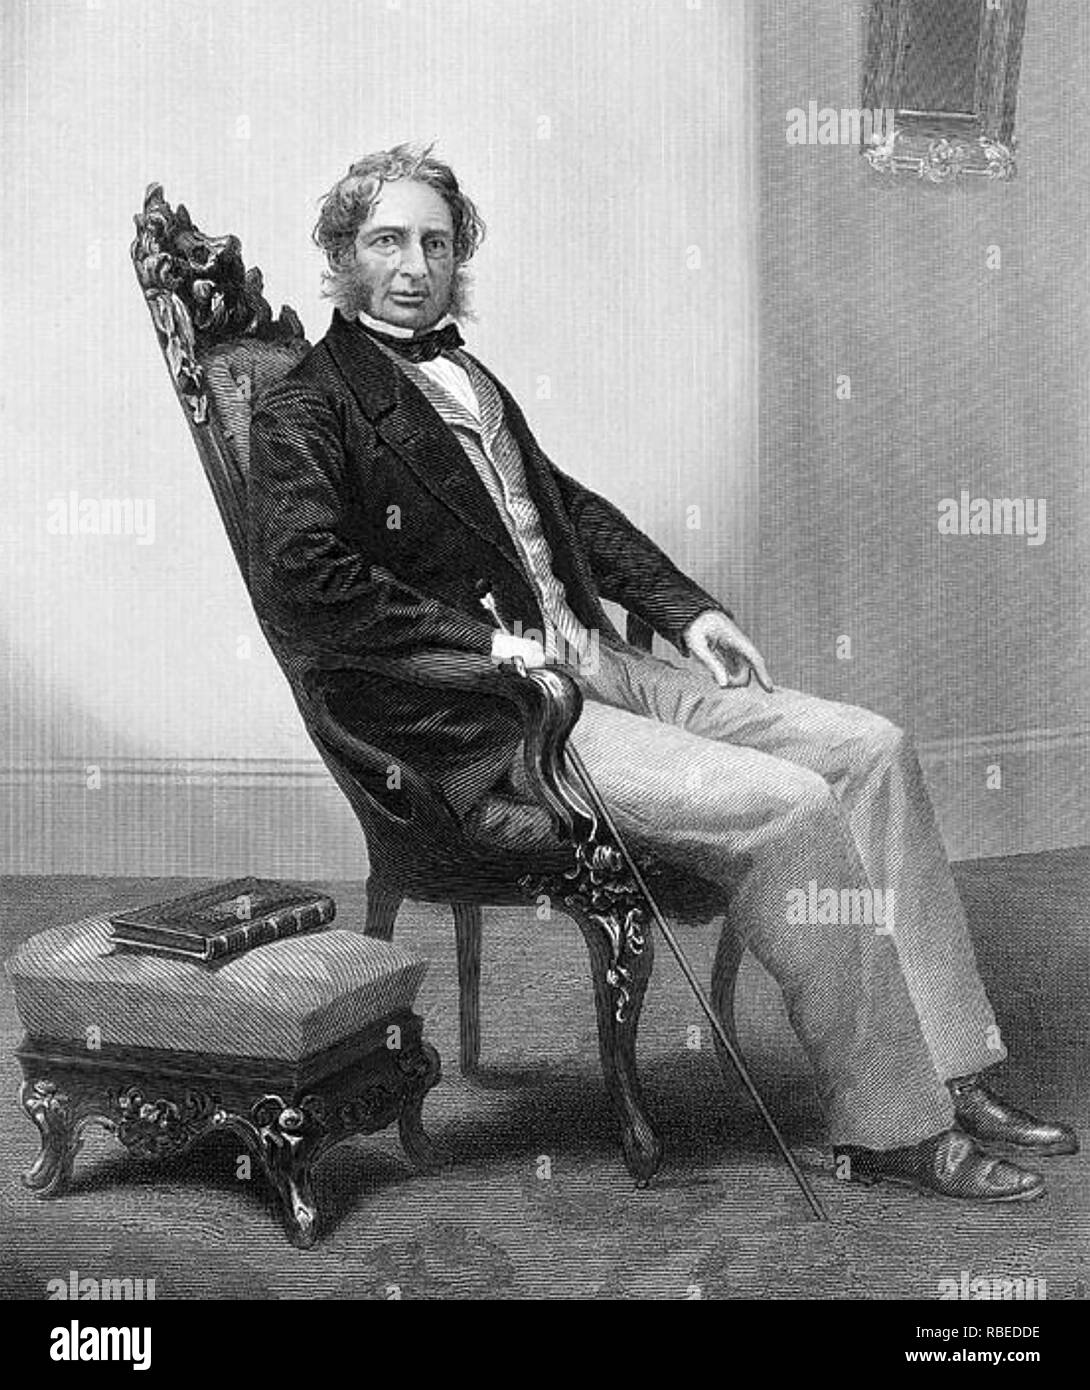 HENRY Wadsworth Longfellow (1807-1882) amerikanischer Dichter, um 1850. Gravur nach daguerreotypie durch Boston Fotografen Southworth & Hawes. Stockfoto